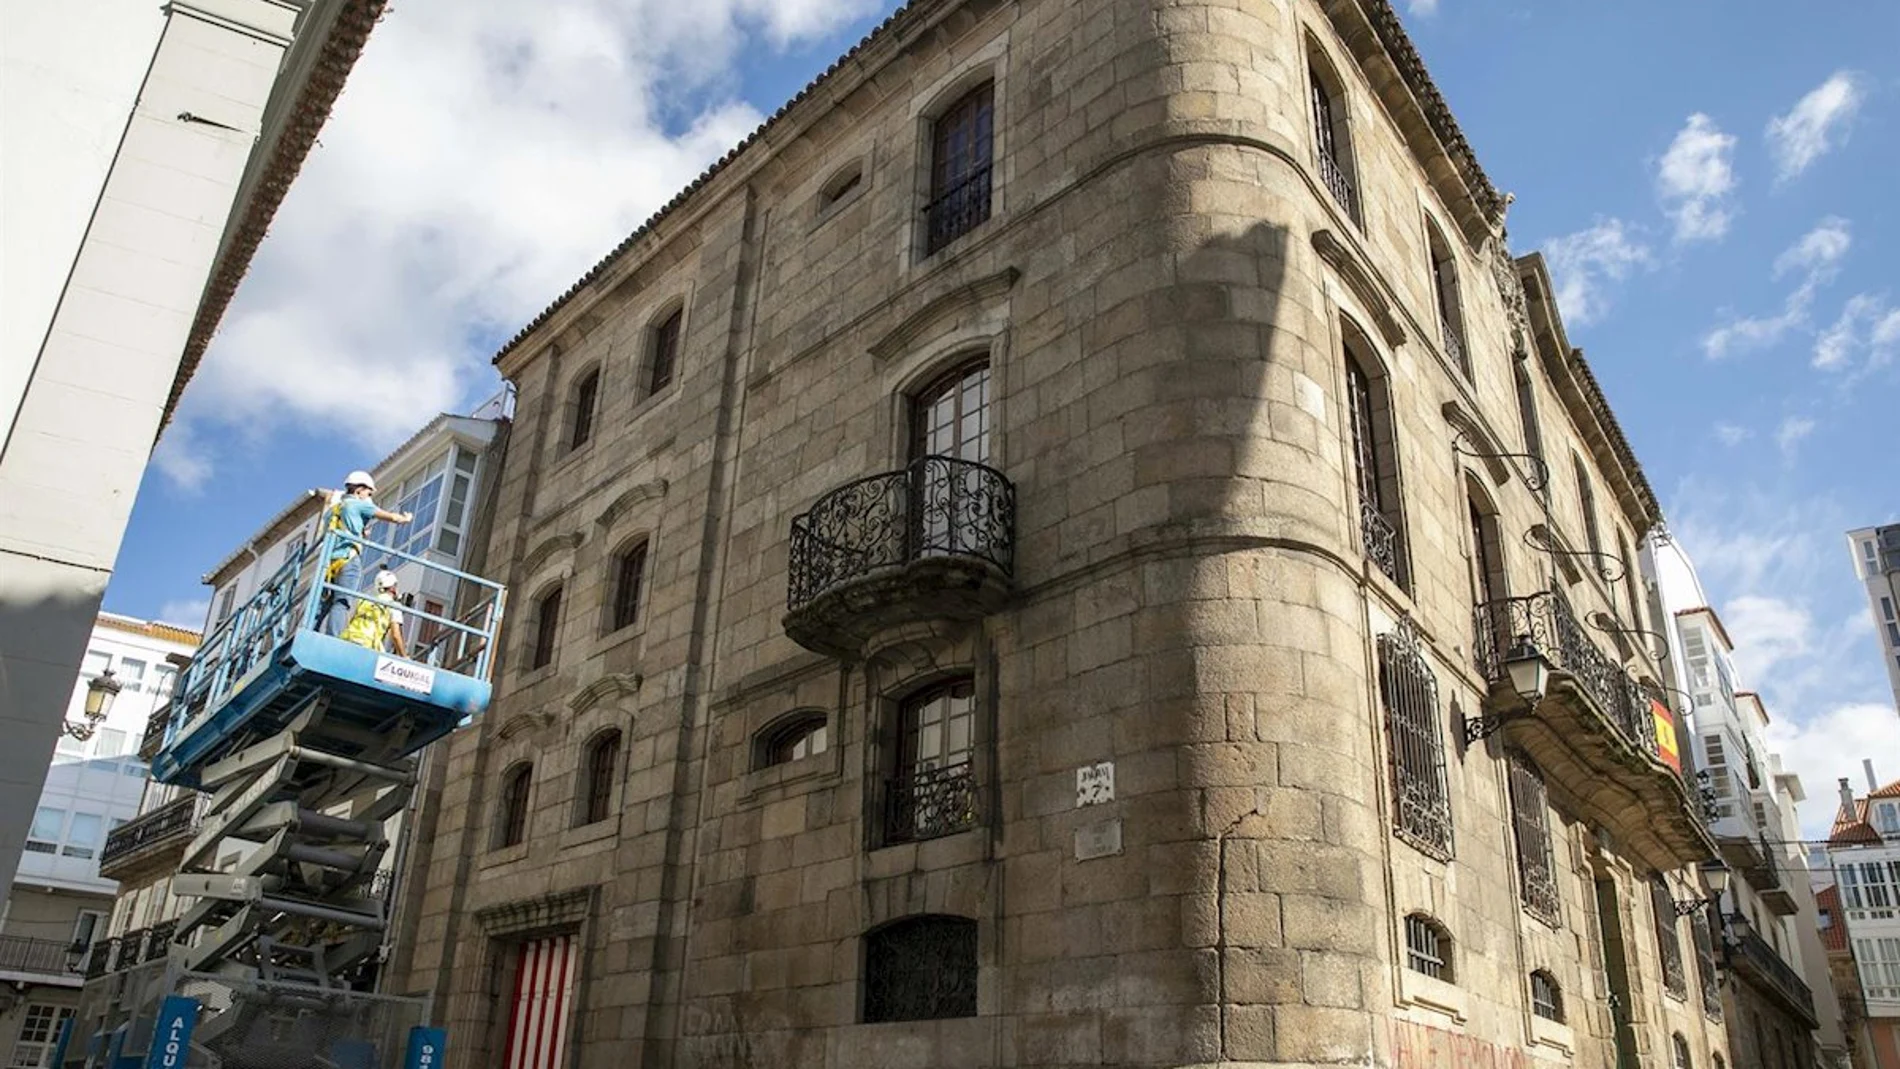 La Casa Cornide es un palacete histórico del siglo XVIII situado en el centro de La Coruña